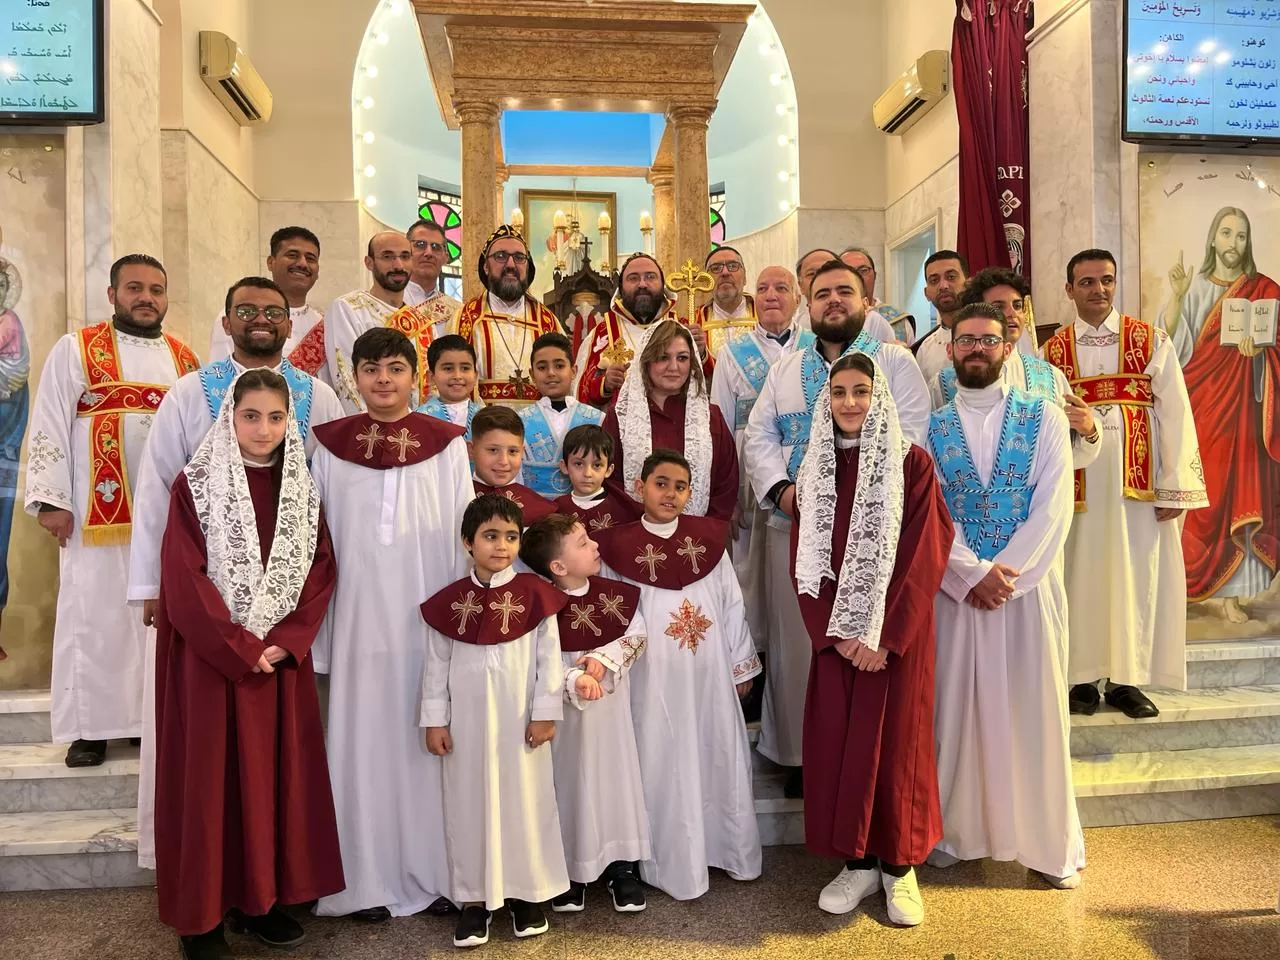 النائب البطريركي للكنيسة السريانية الأرثوذكسية في مصر بالوكالة يرسم عدداً من الشمامسة والشماسات